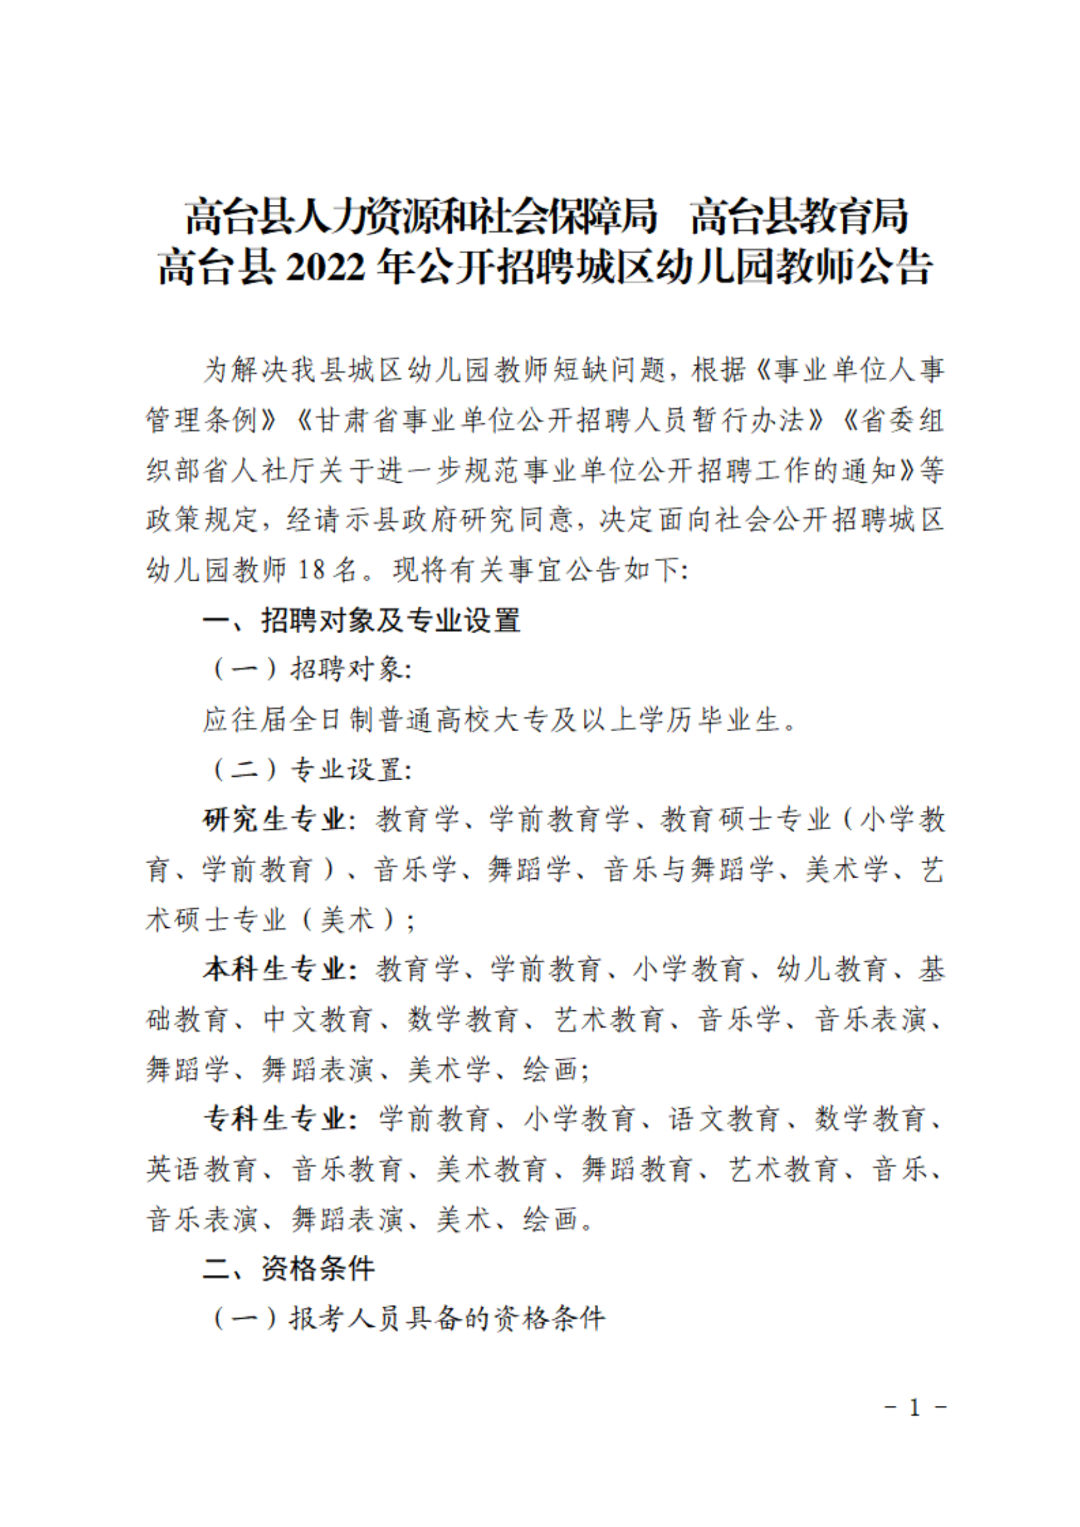 2022年甘肃张掖高台县招聘城区幼儿园教师18人公告